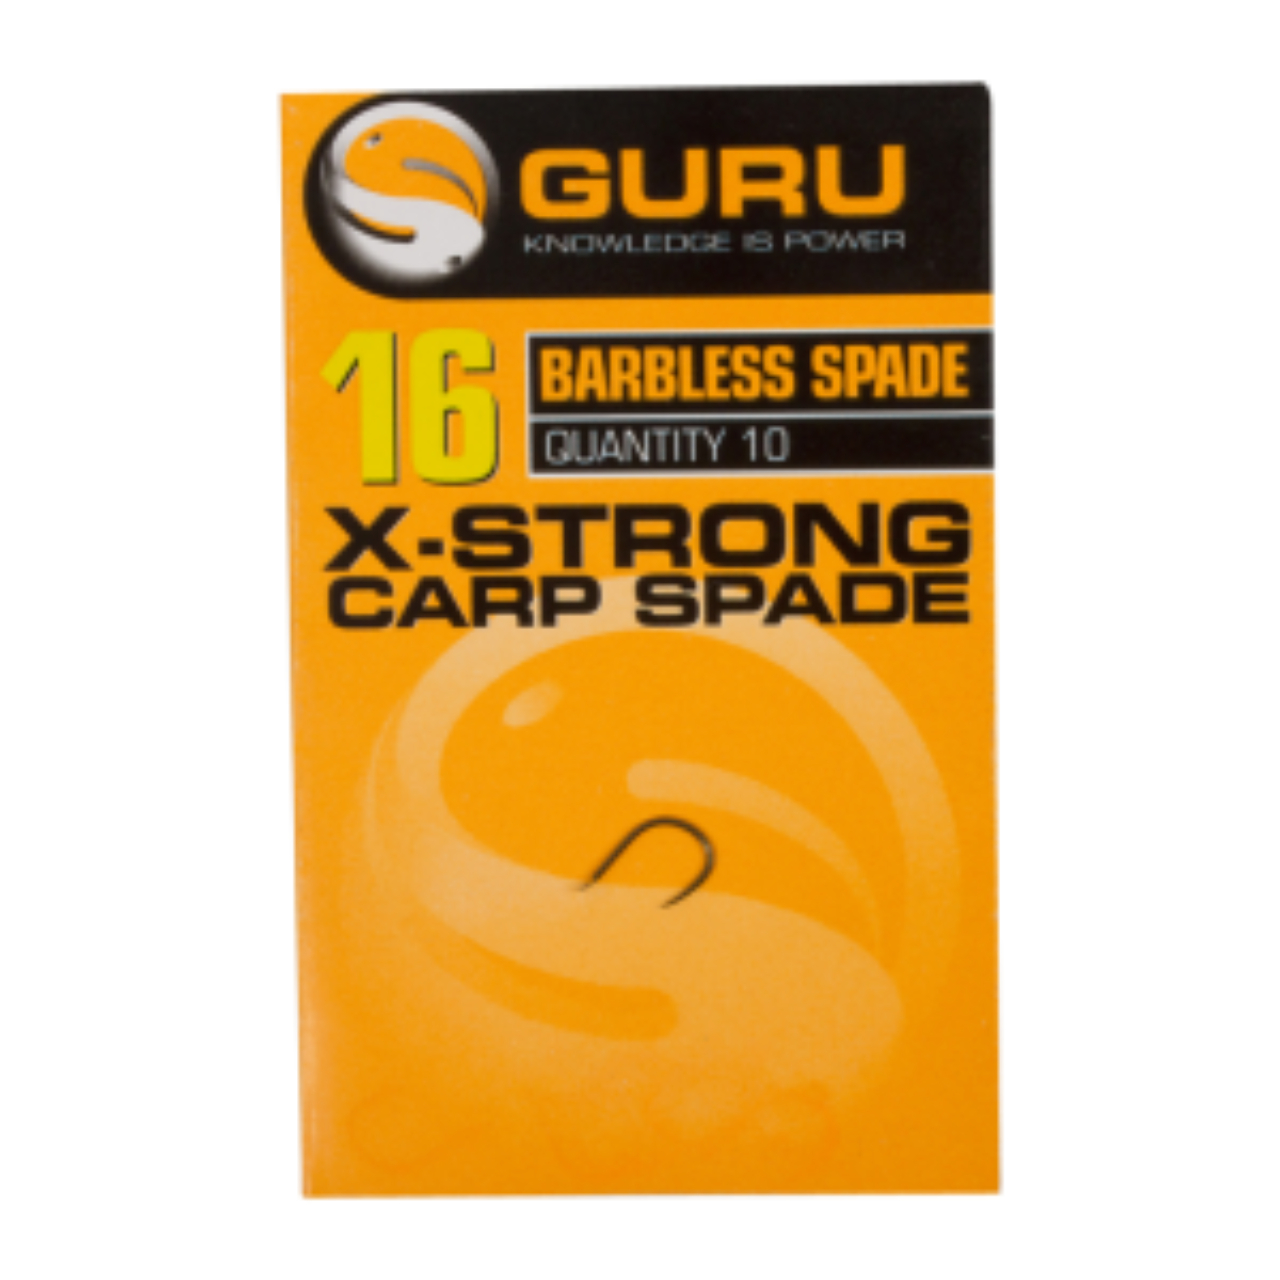 Guru Extra Strong Carp-Spade GXS10_1.jpg